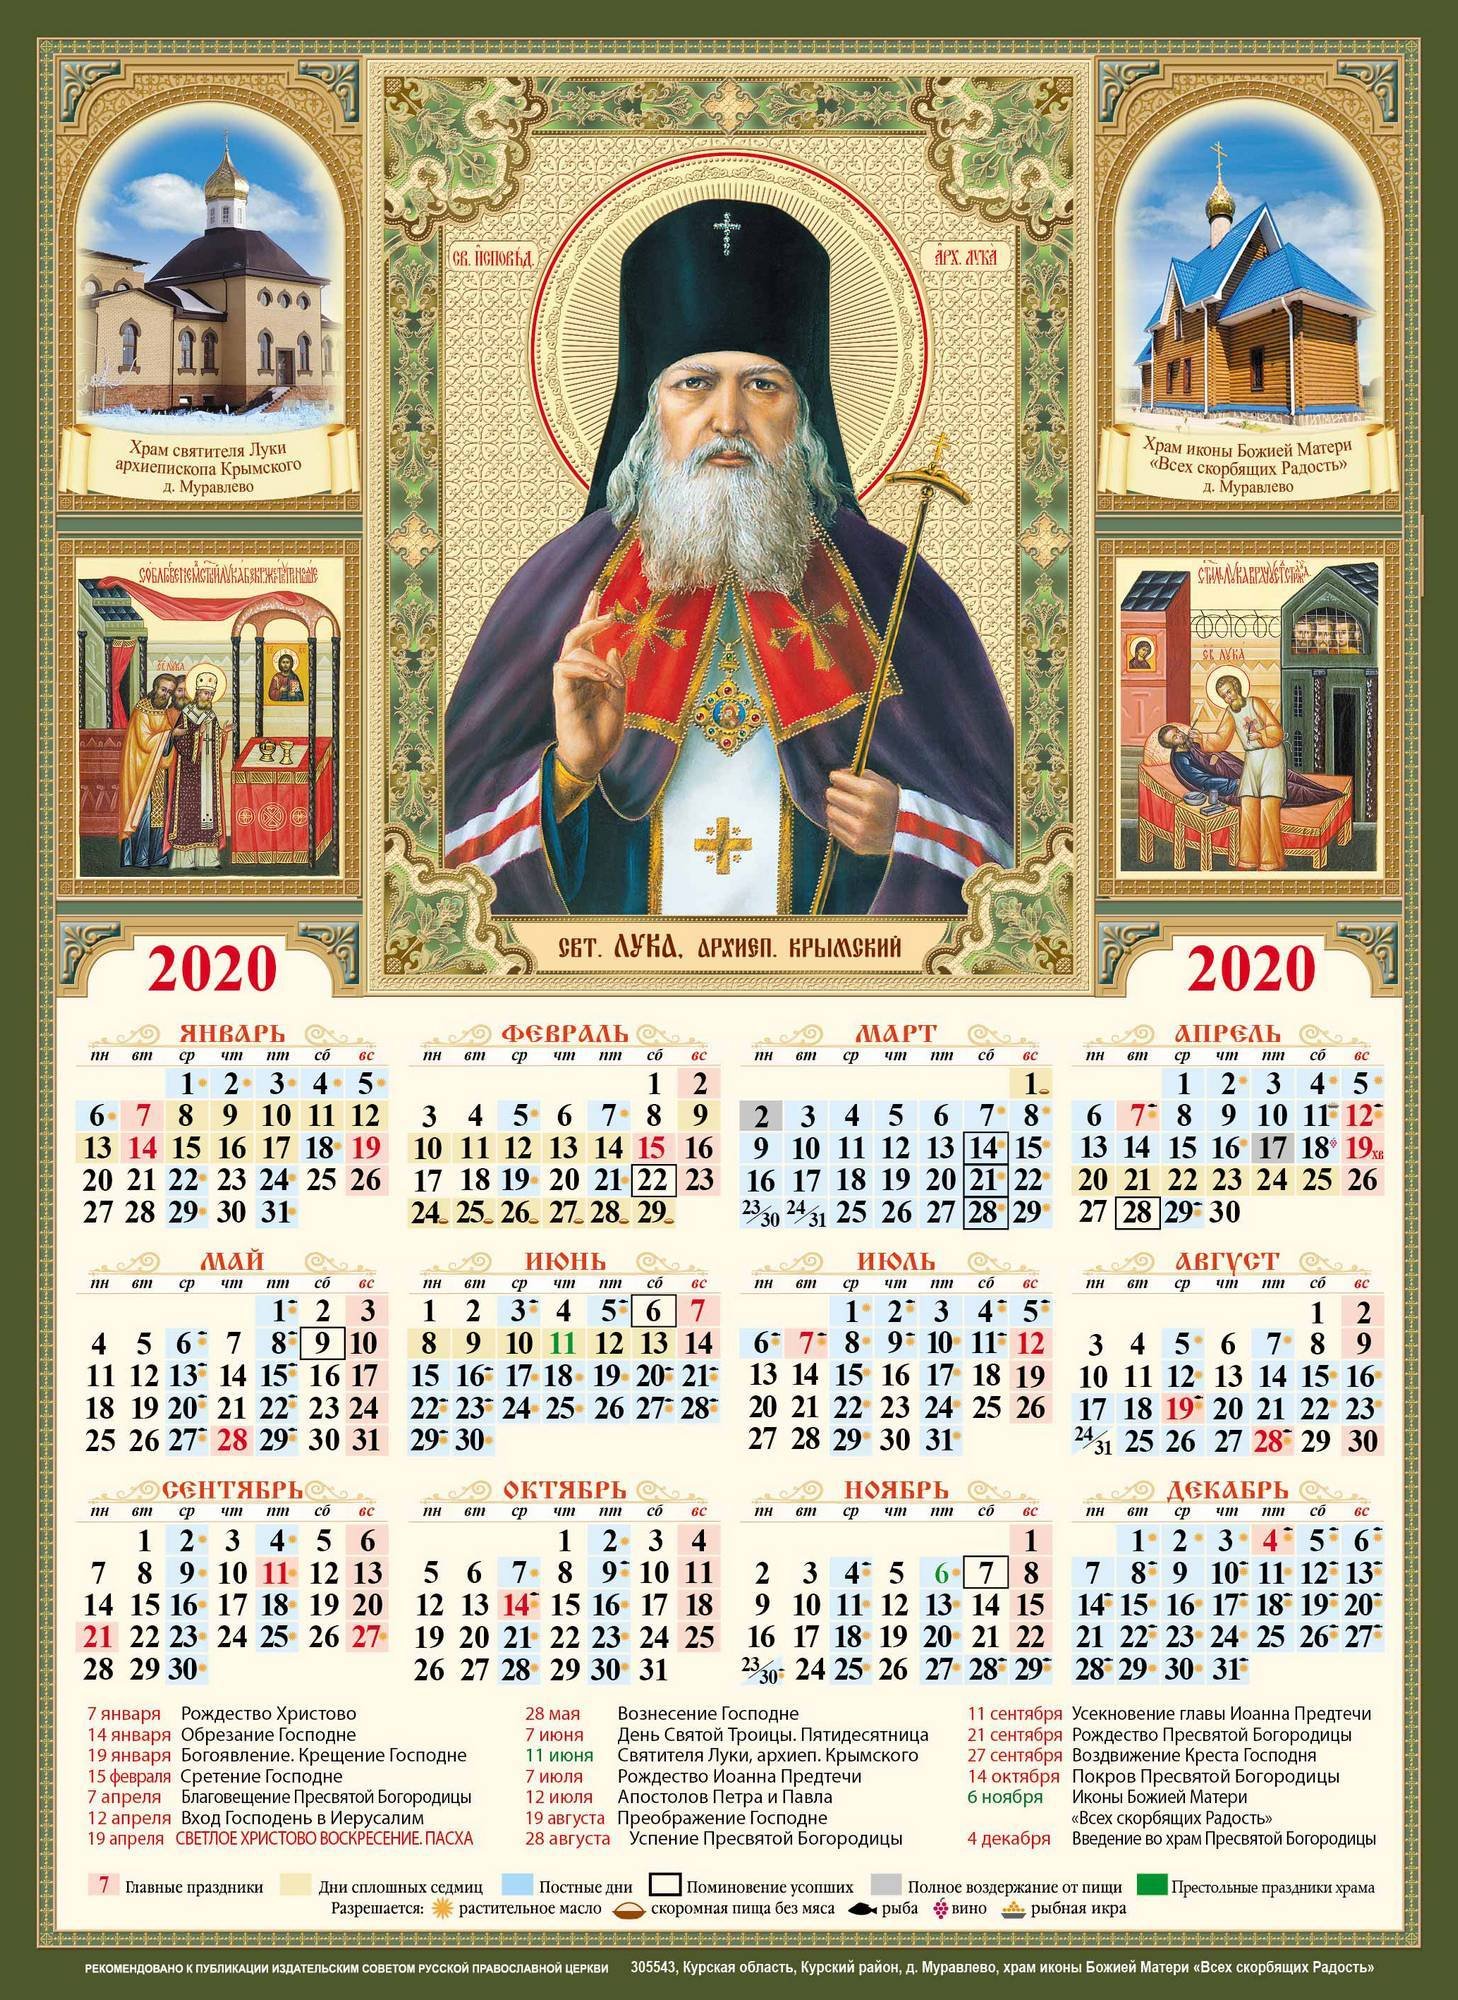 Какой сегодня день у православных. Православный церковный календарь 2020-2021. Православный календарь на 2020 год. Православныйкаленжарь. Календарьпрааослааный.